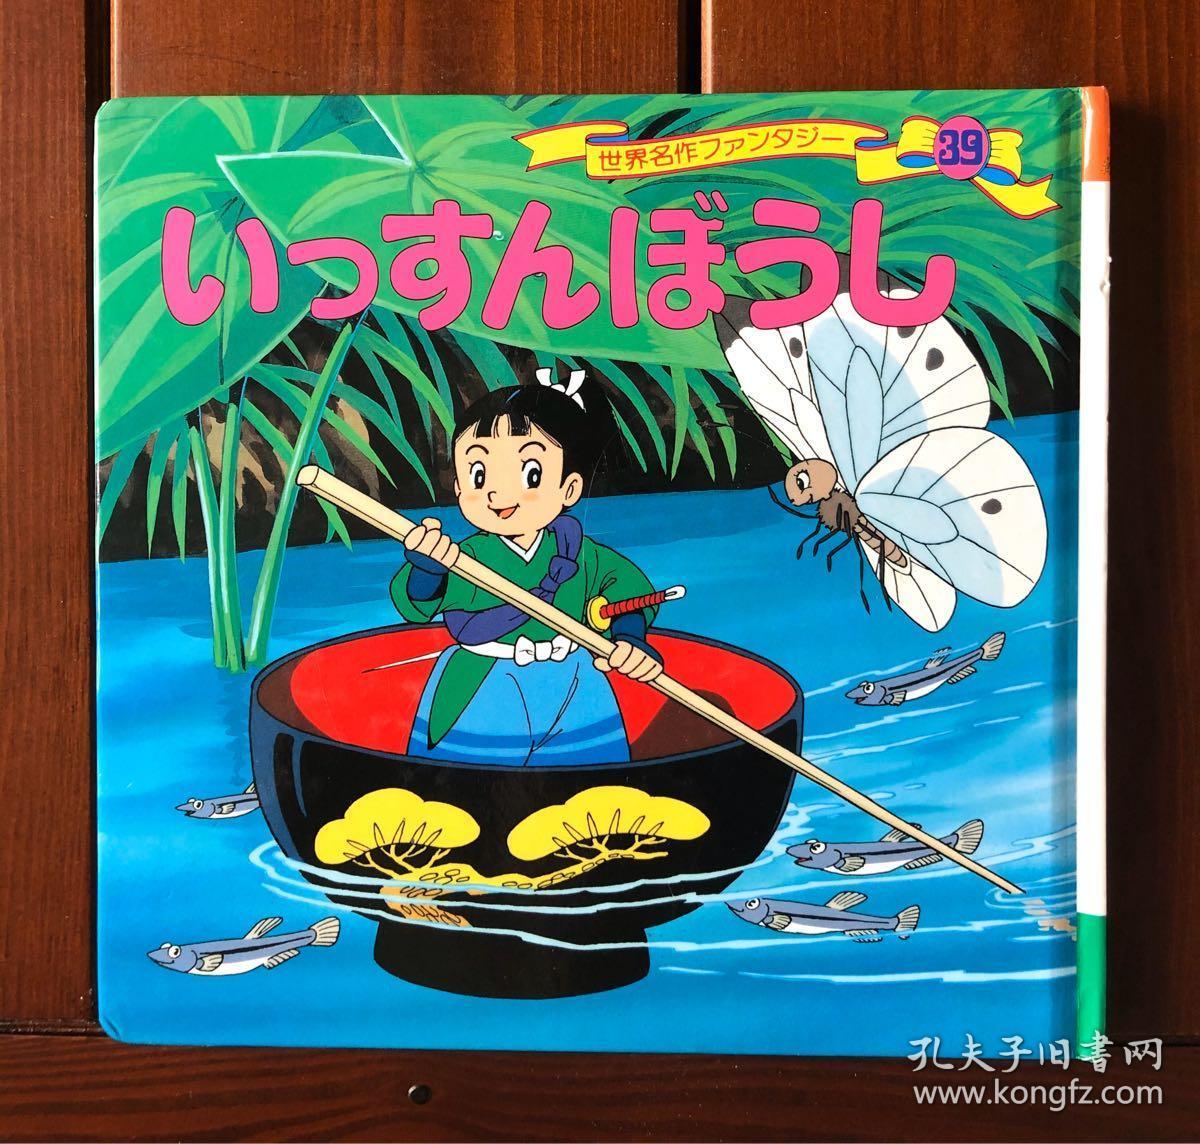 一寸法师日文版世界著名童话39 平田昭吾 孔夫子旧书网